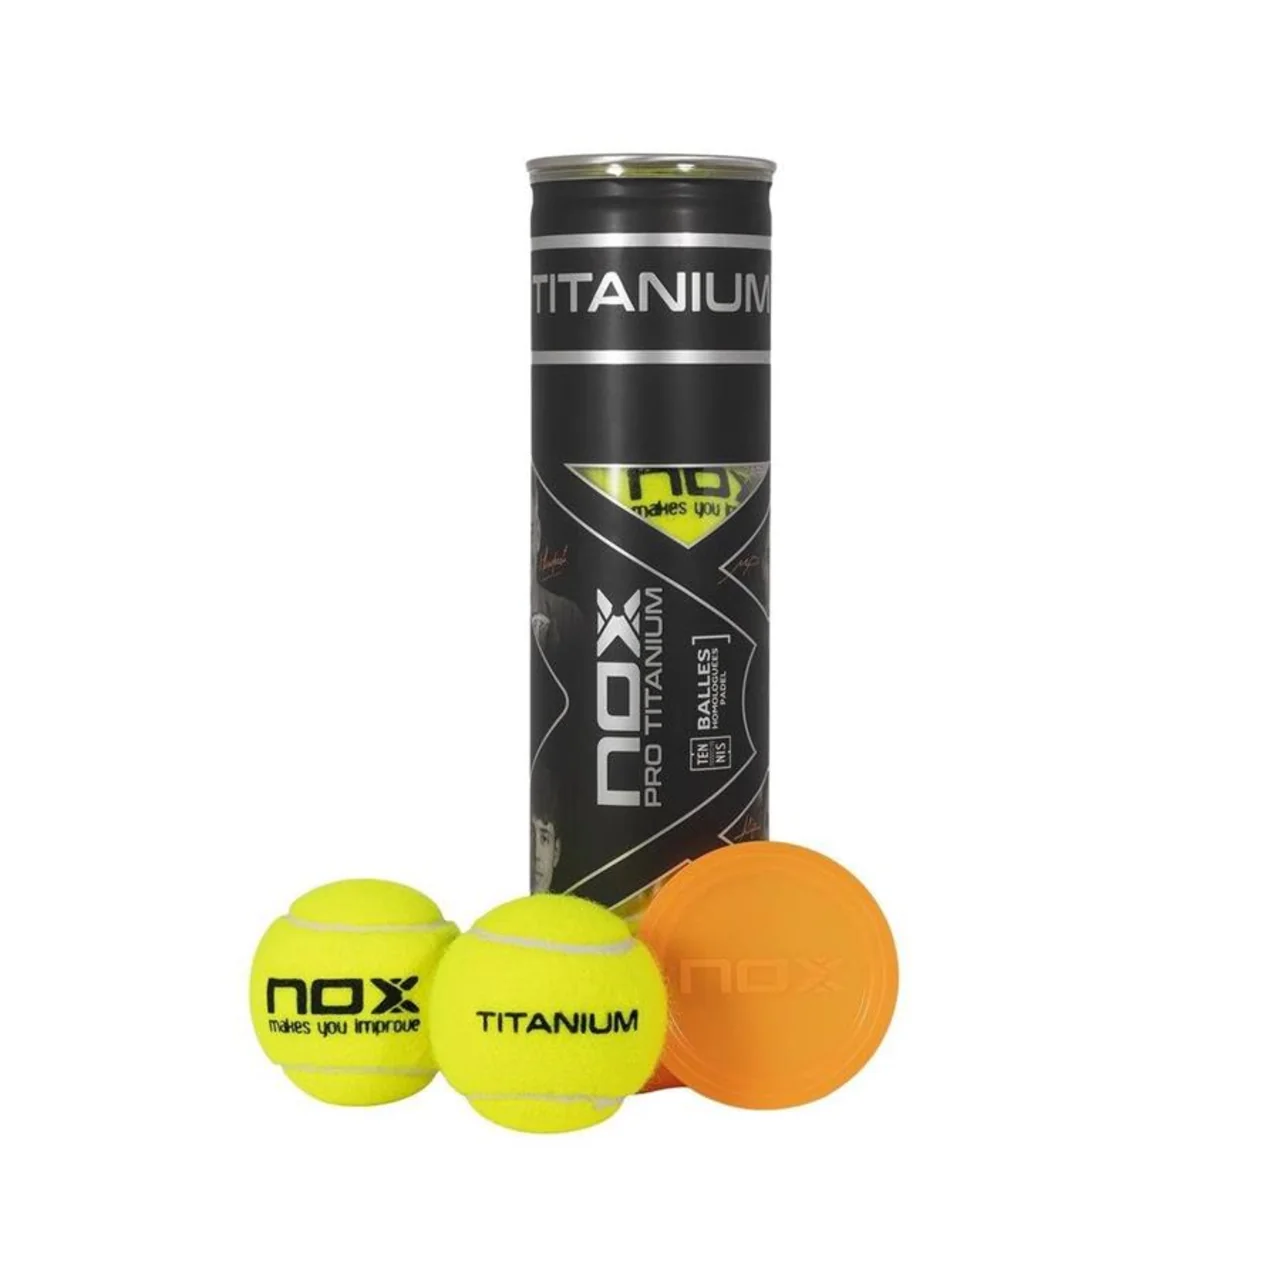 Nox Pro Titanium 4 Balls 3 rør